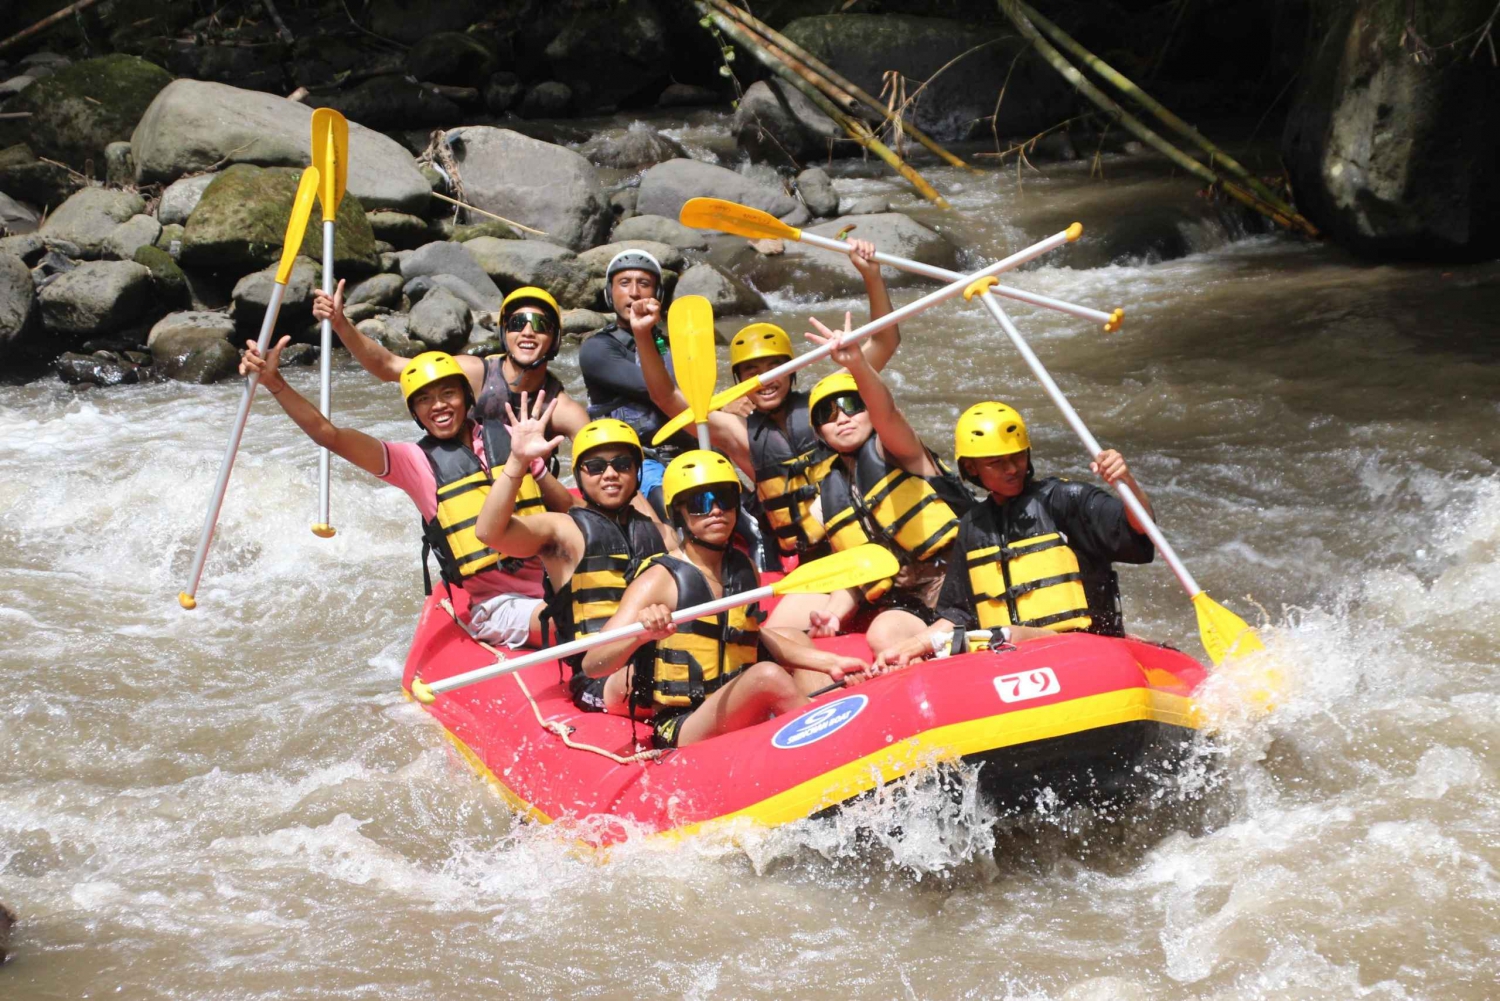 Rafting i Ubud, riceterrass och vattenfall ingår